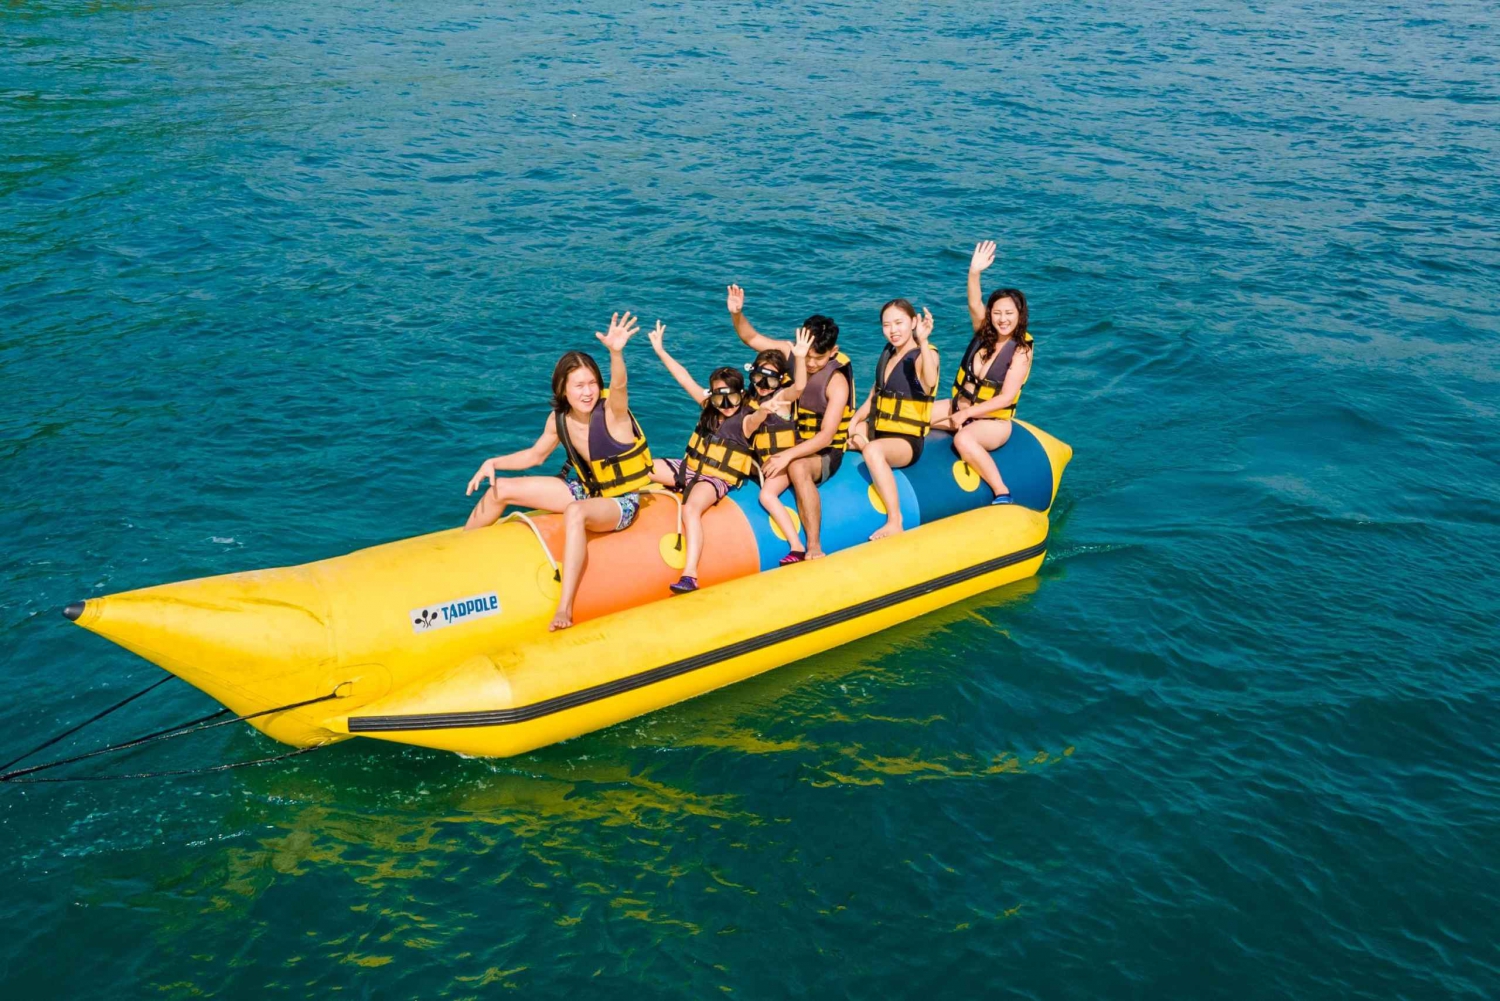 Phu Quoc: ekscytujący rejs wycieczkowy łodzią bananową i zwiedzanie 3 wysp w połączeniu